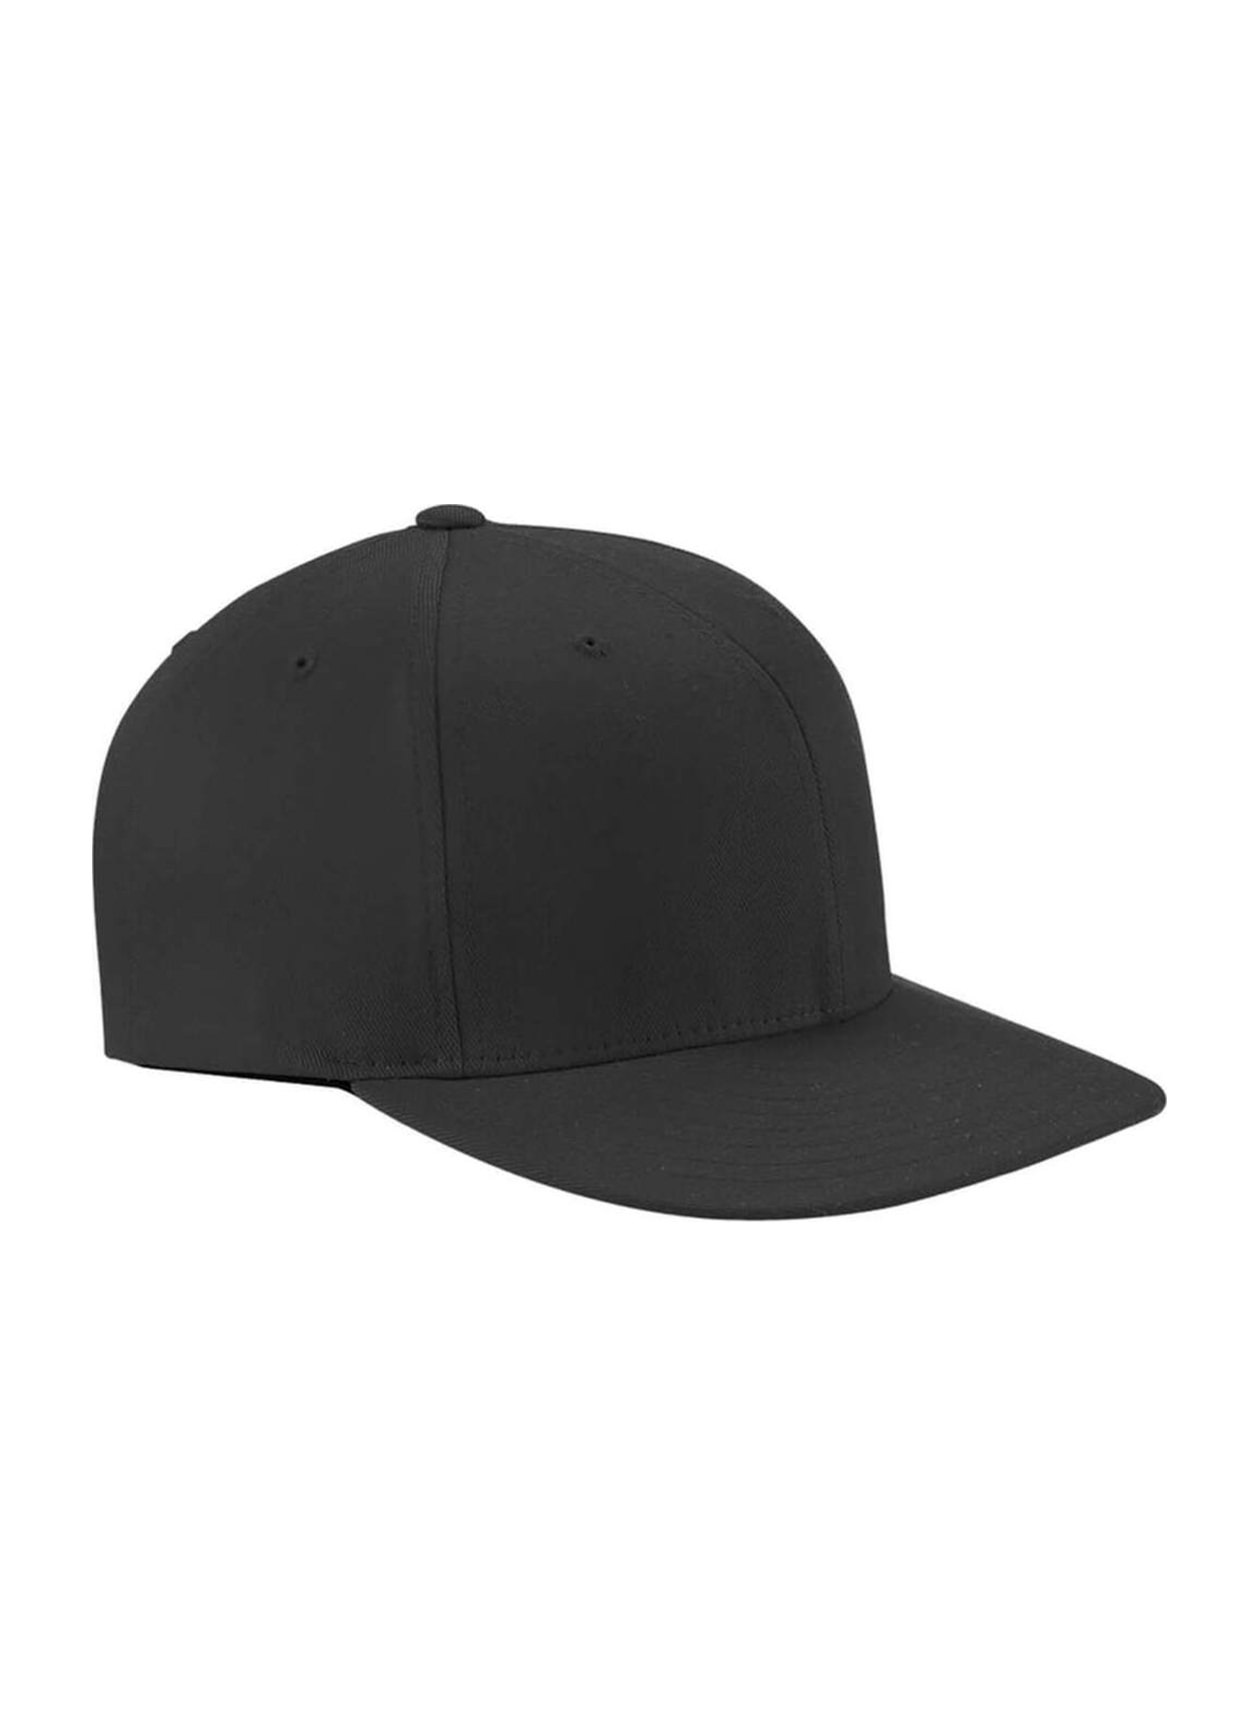 On-Field Hat Baseball Flexfit with Wooly Pro Shape Twill Bill Flat Flexfit |